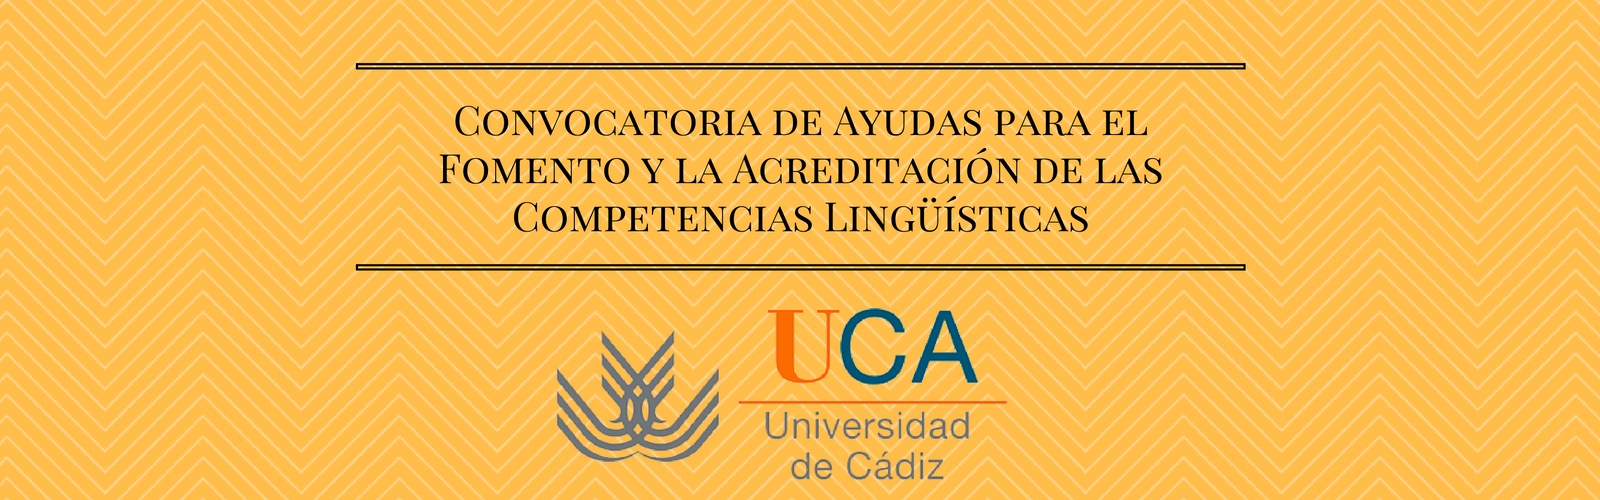 Convocatoria de Ayudas para el Fomento y la Acreditación de las Competencias Lingüísticas